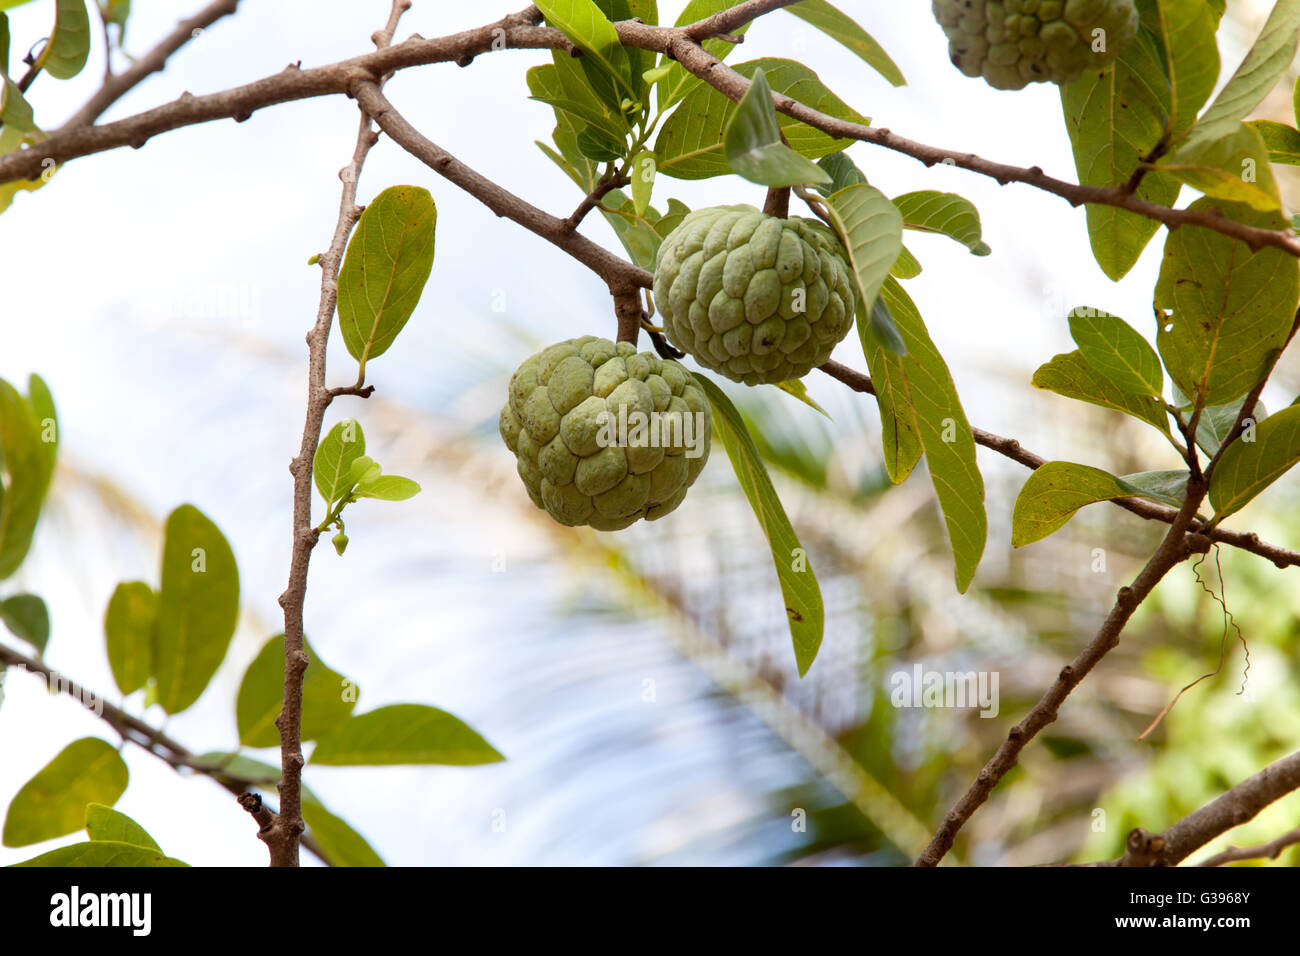 Annona squamosa or Custard apple fruit on tree in garden. Stock Photo